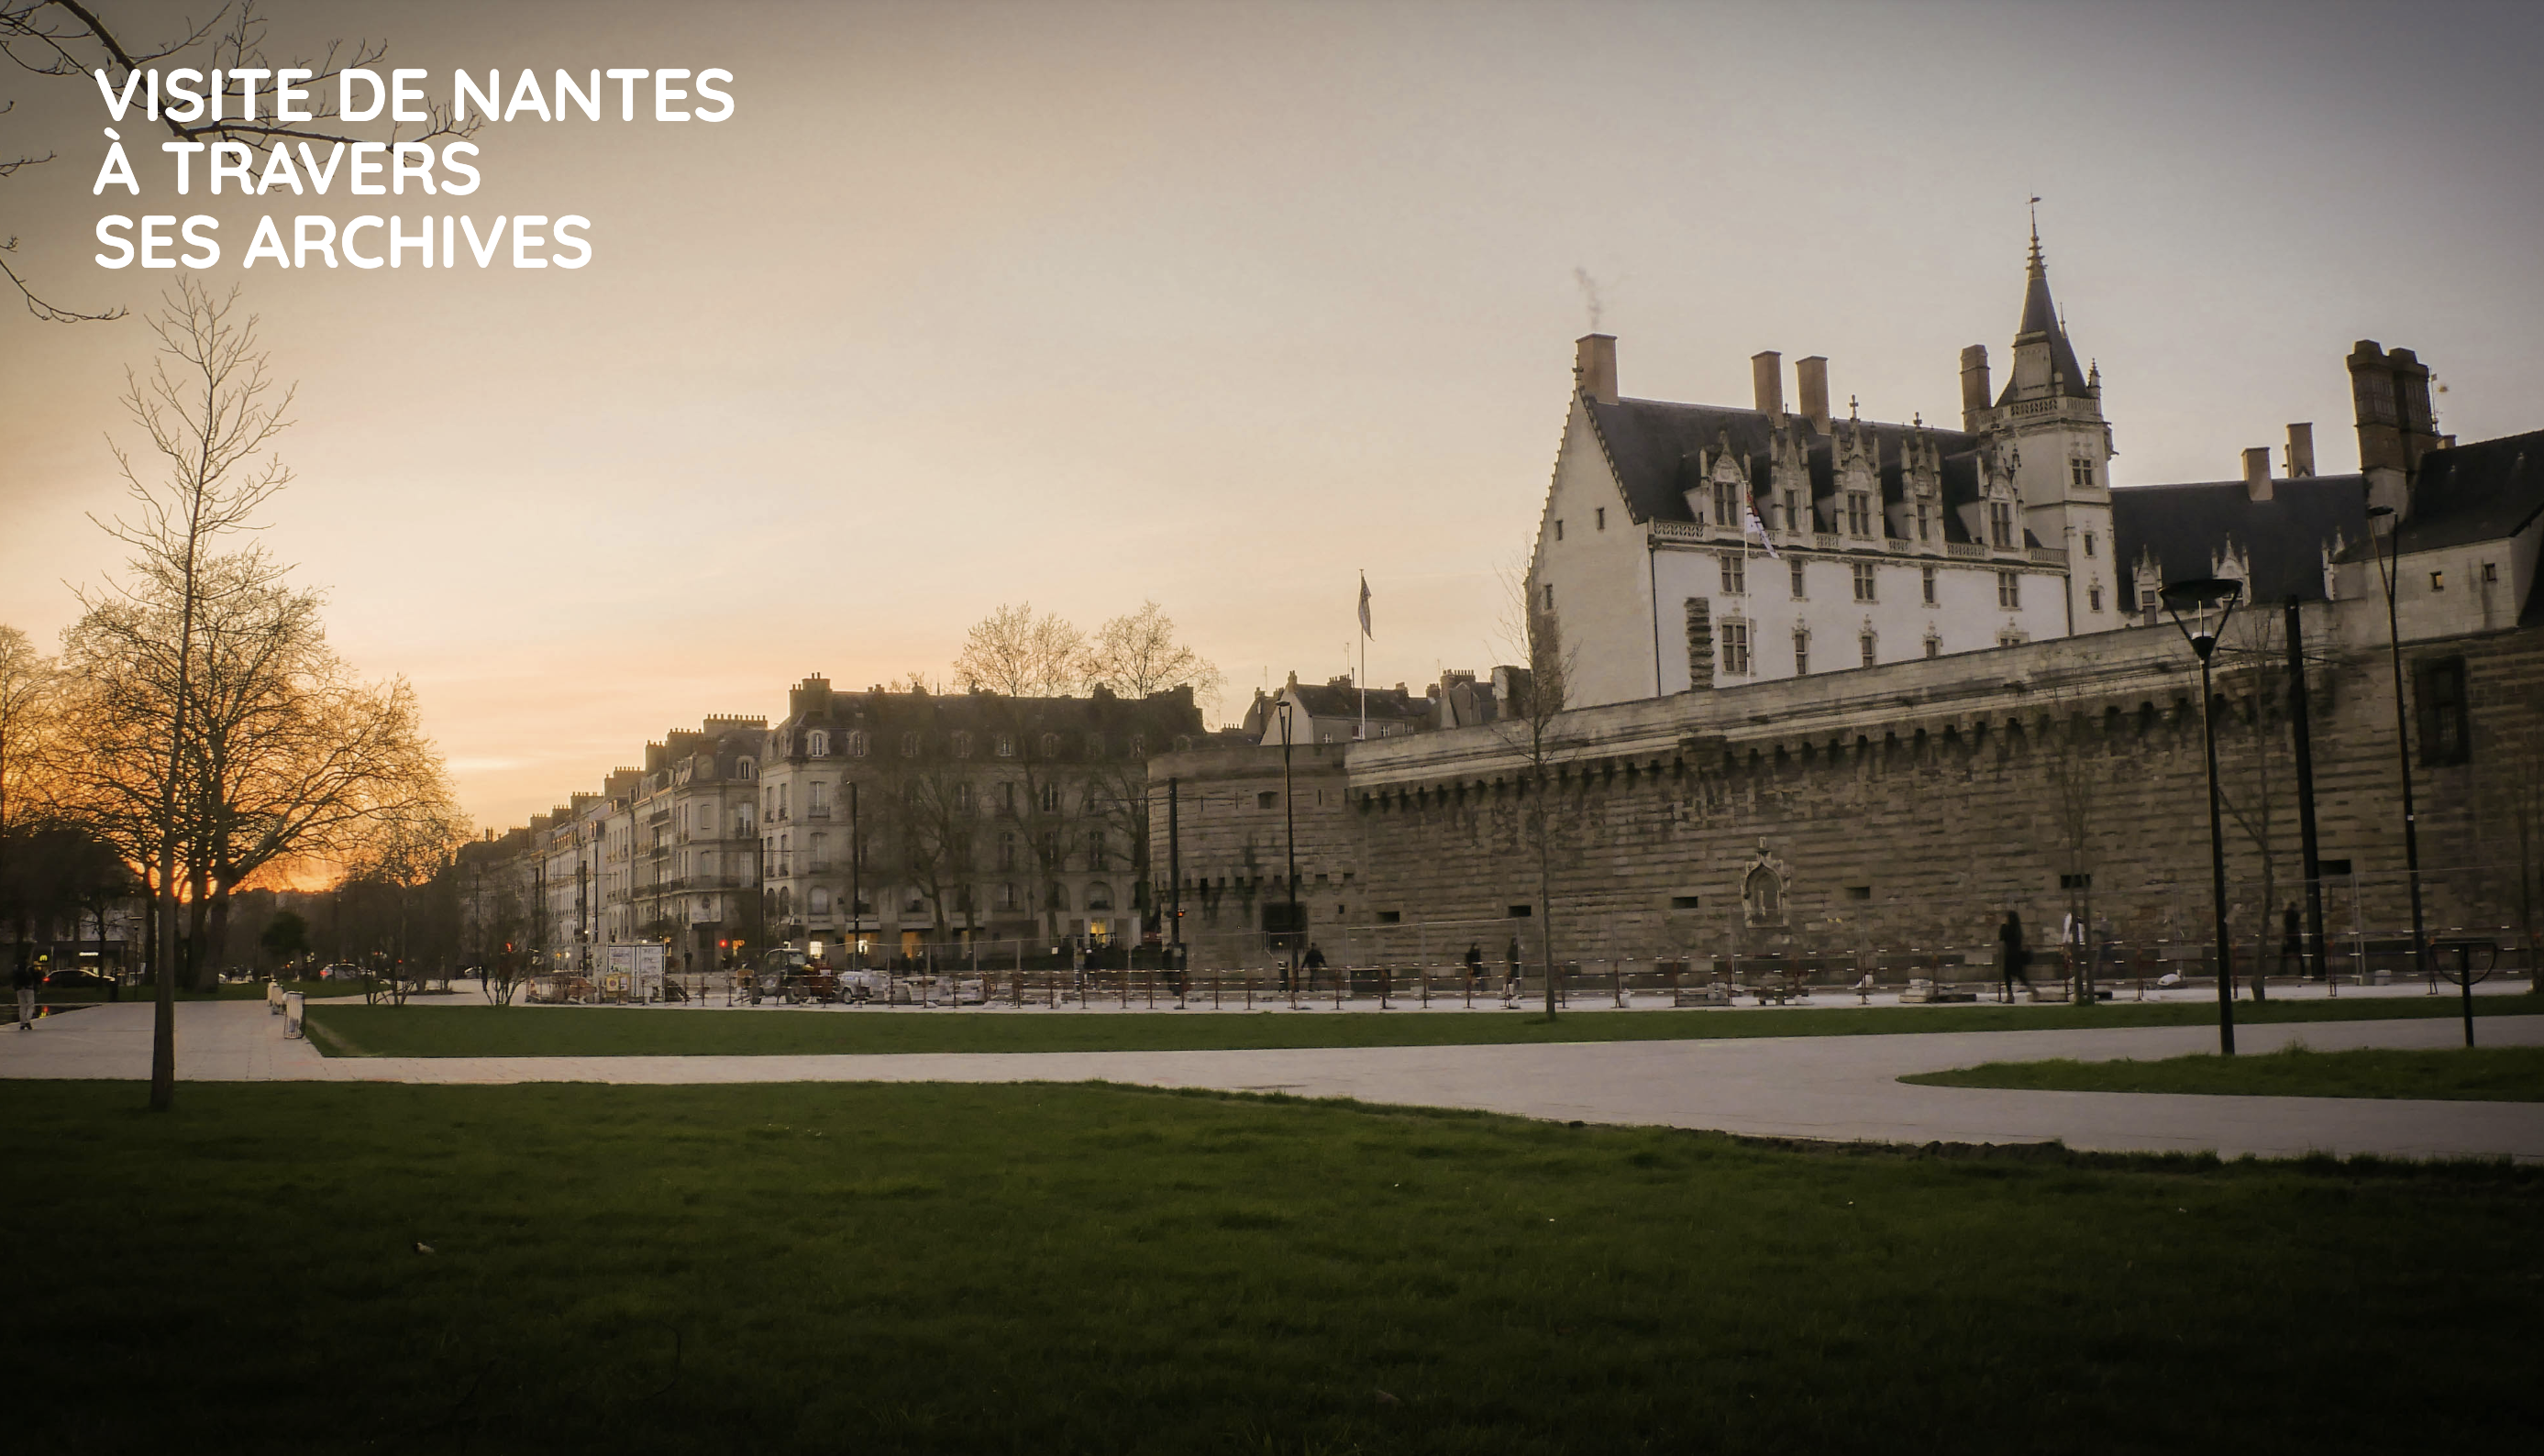 Visite de Nantes à travers ses archives